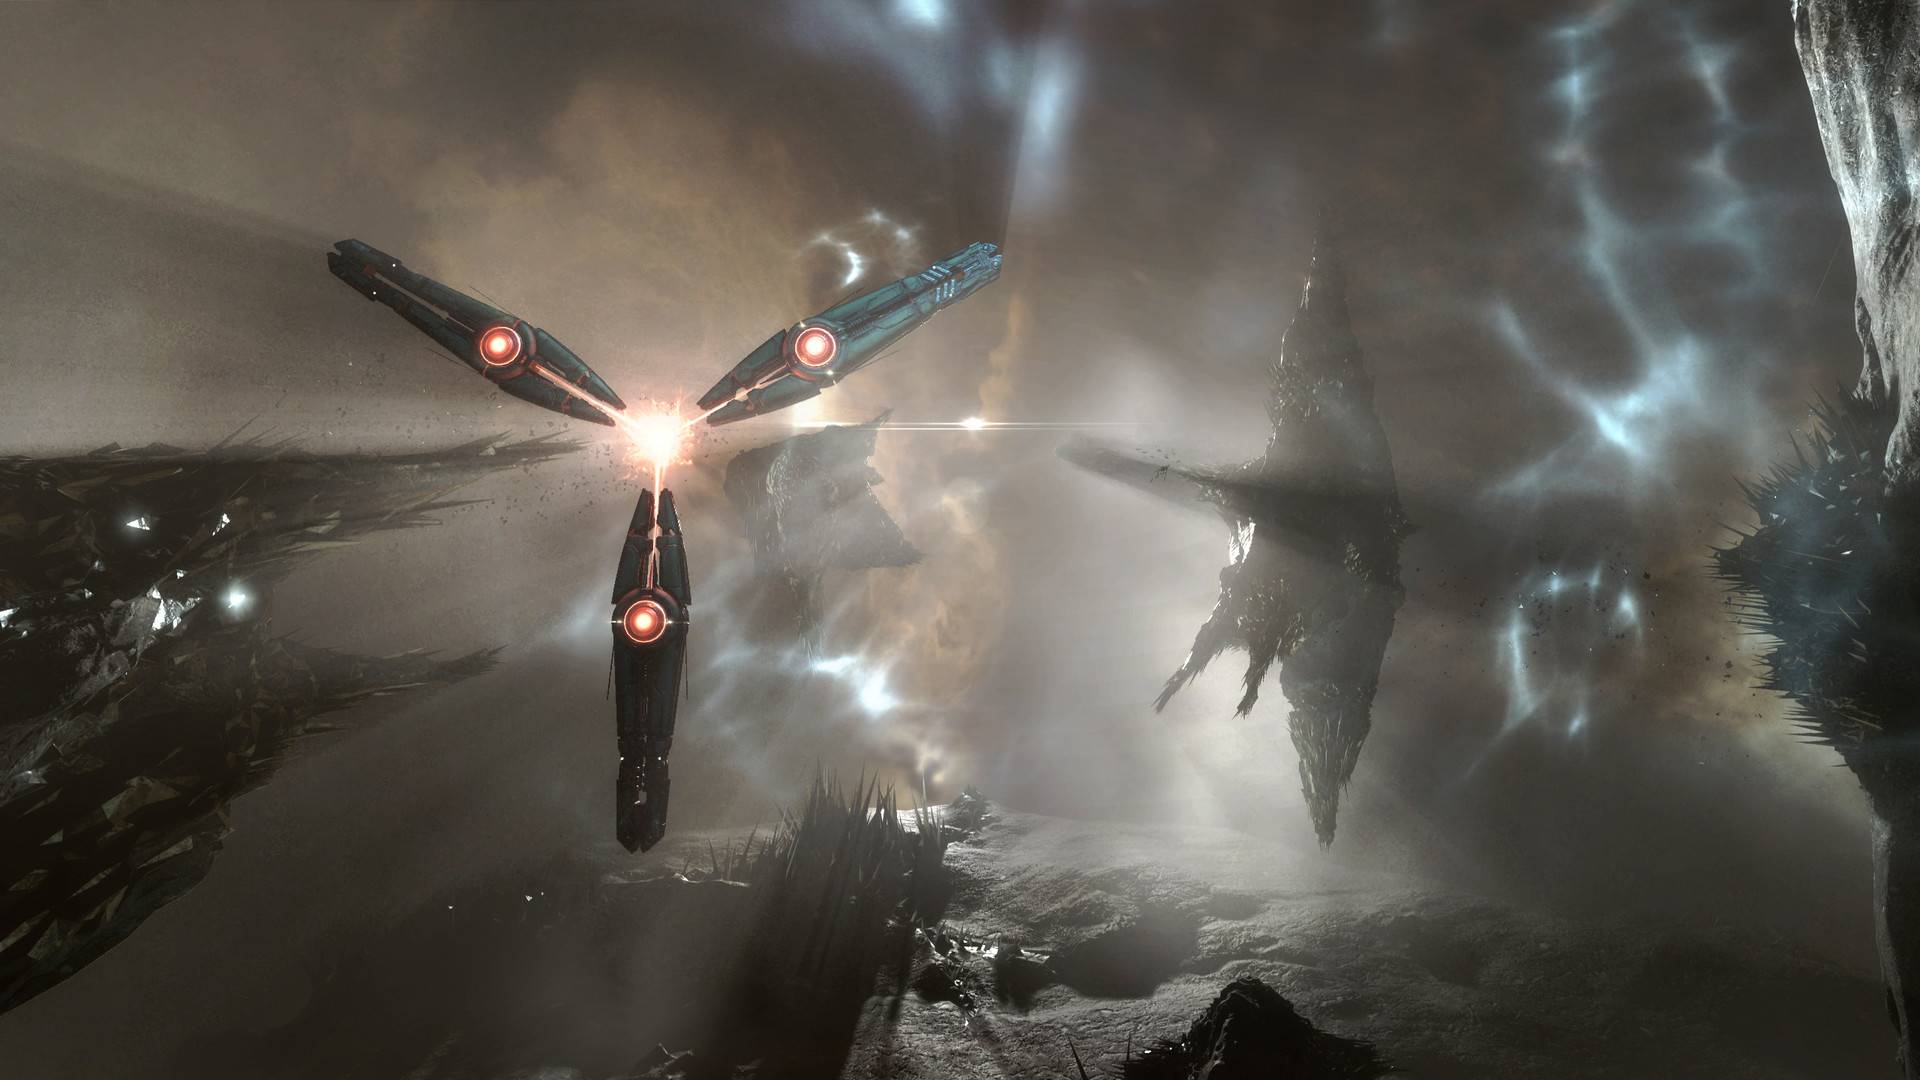 بهترین بازی های MMORPG: Eve Online. تصویر کشتی های دنیای دیگر را نشان می دهد که از طریق فضا پرواز می کنند